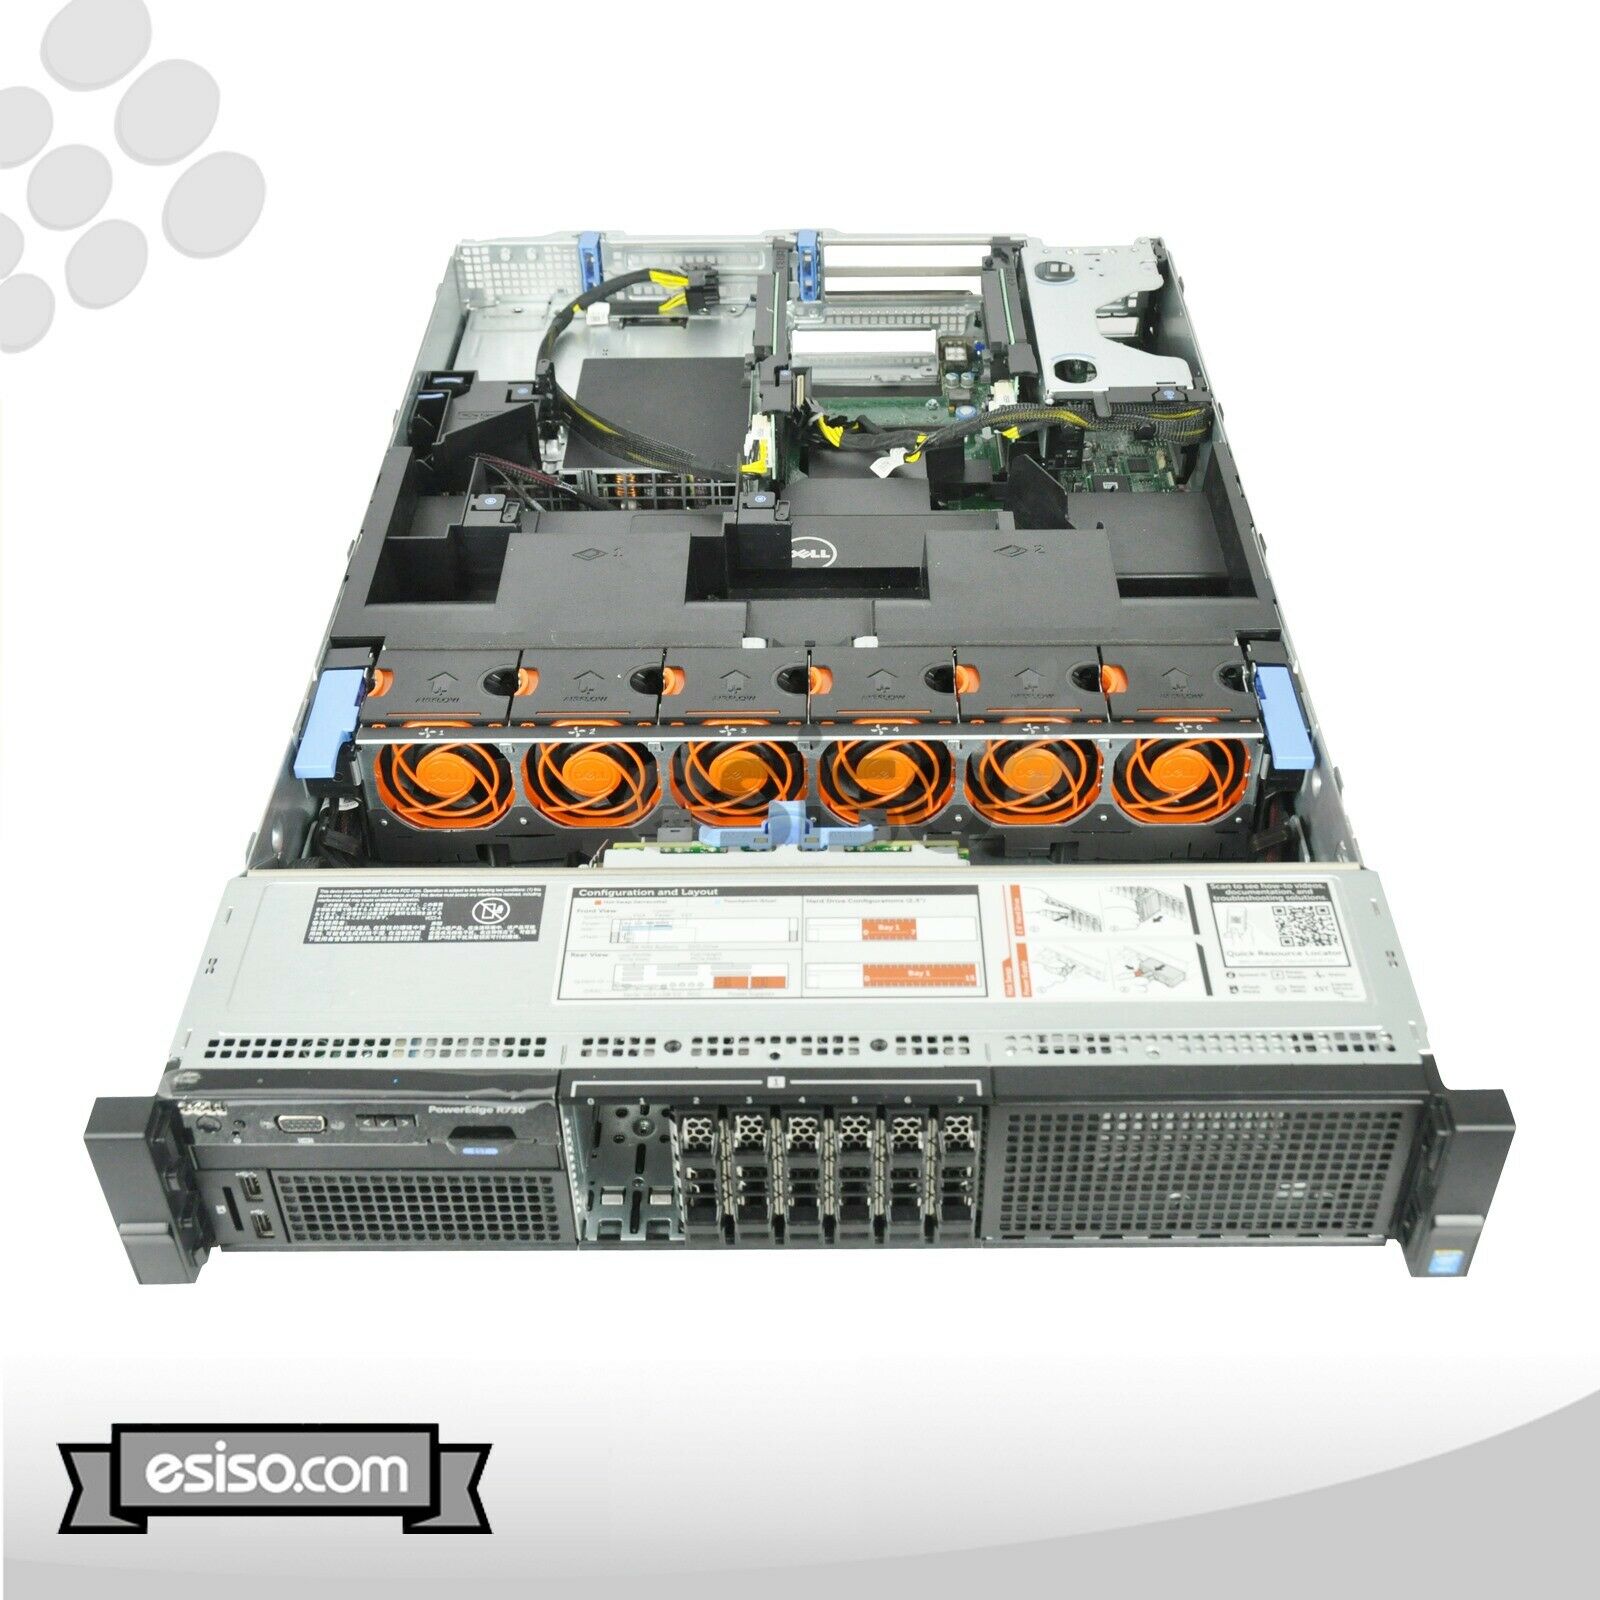 DELL POWEREDGE R730 8SFF 2x 12 CORE E5-2678v3 2.5GHz 32GB RAM H330 RAIL NO HDD